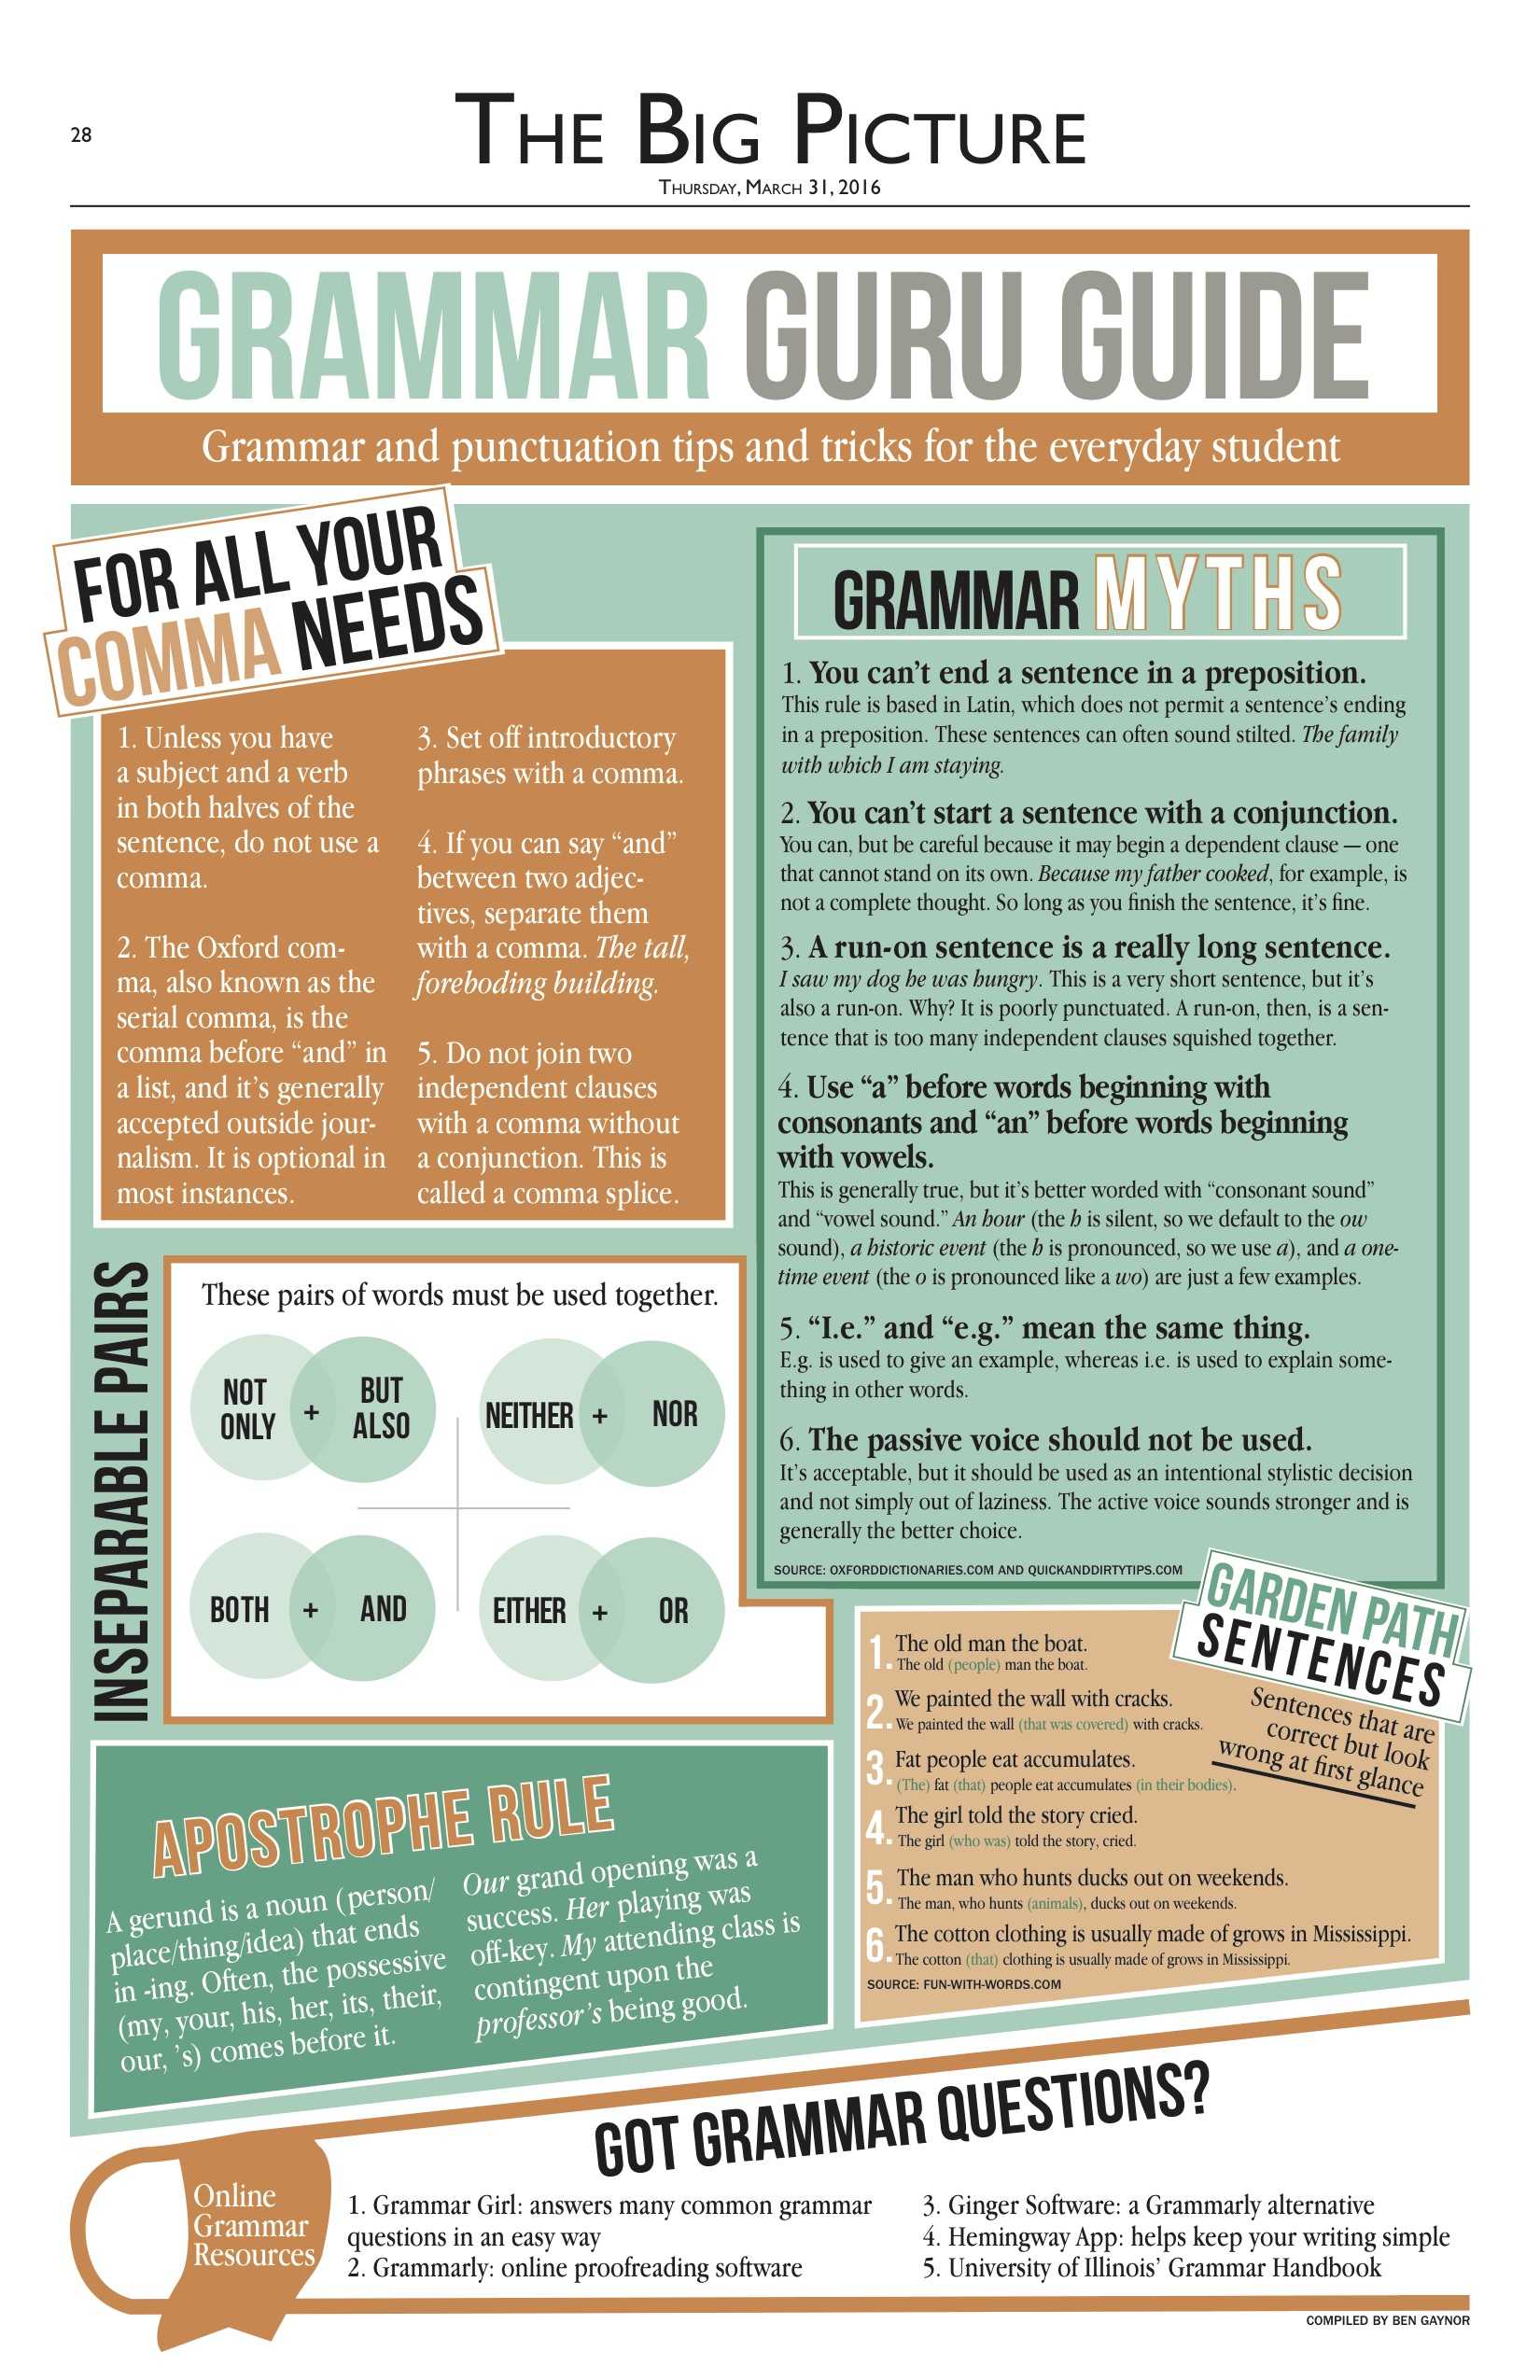 Grammar Guru Guide